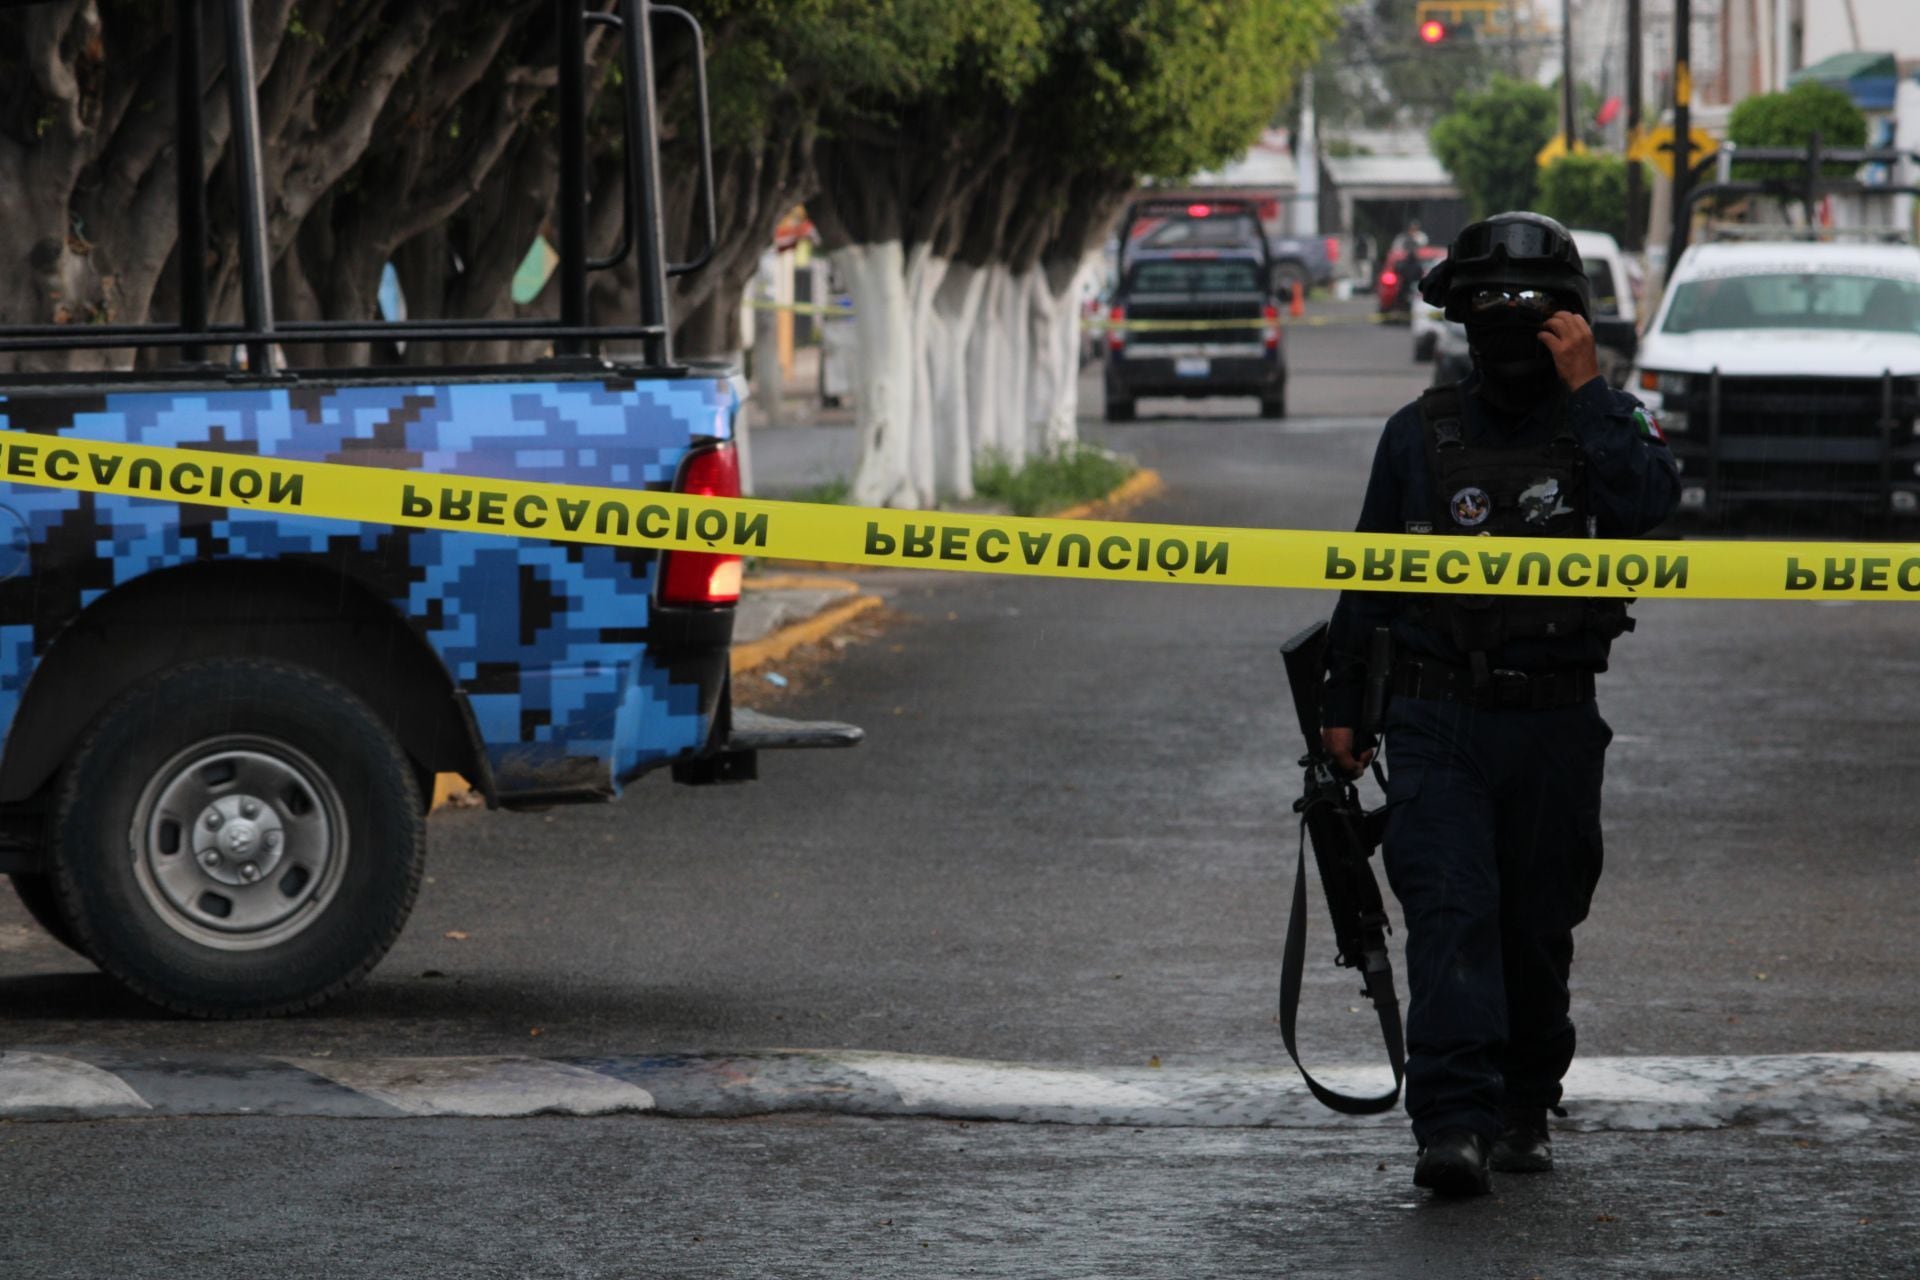 Violencia en Guanajuato no cesa: Atacan a balazos a una familia; hay 4 heridos y un muerto